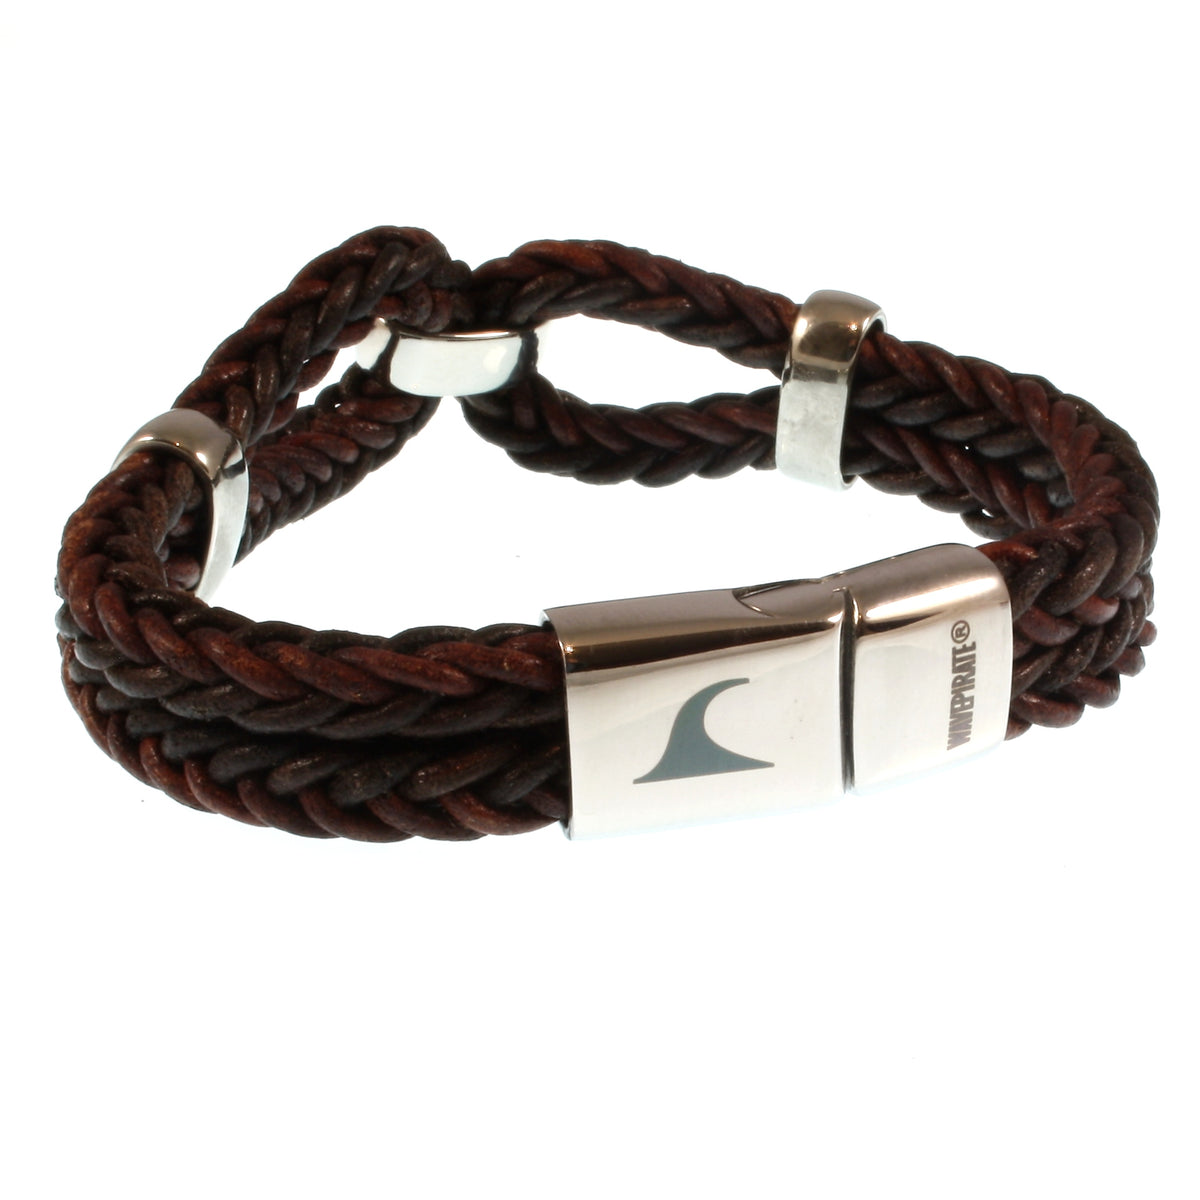 Damen-Leder-armband-roma-braun-geflochten-Edelstahlverschluss-hinten-wavepirate-shop-r